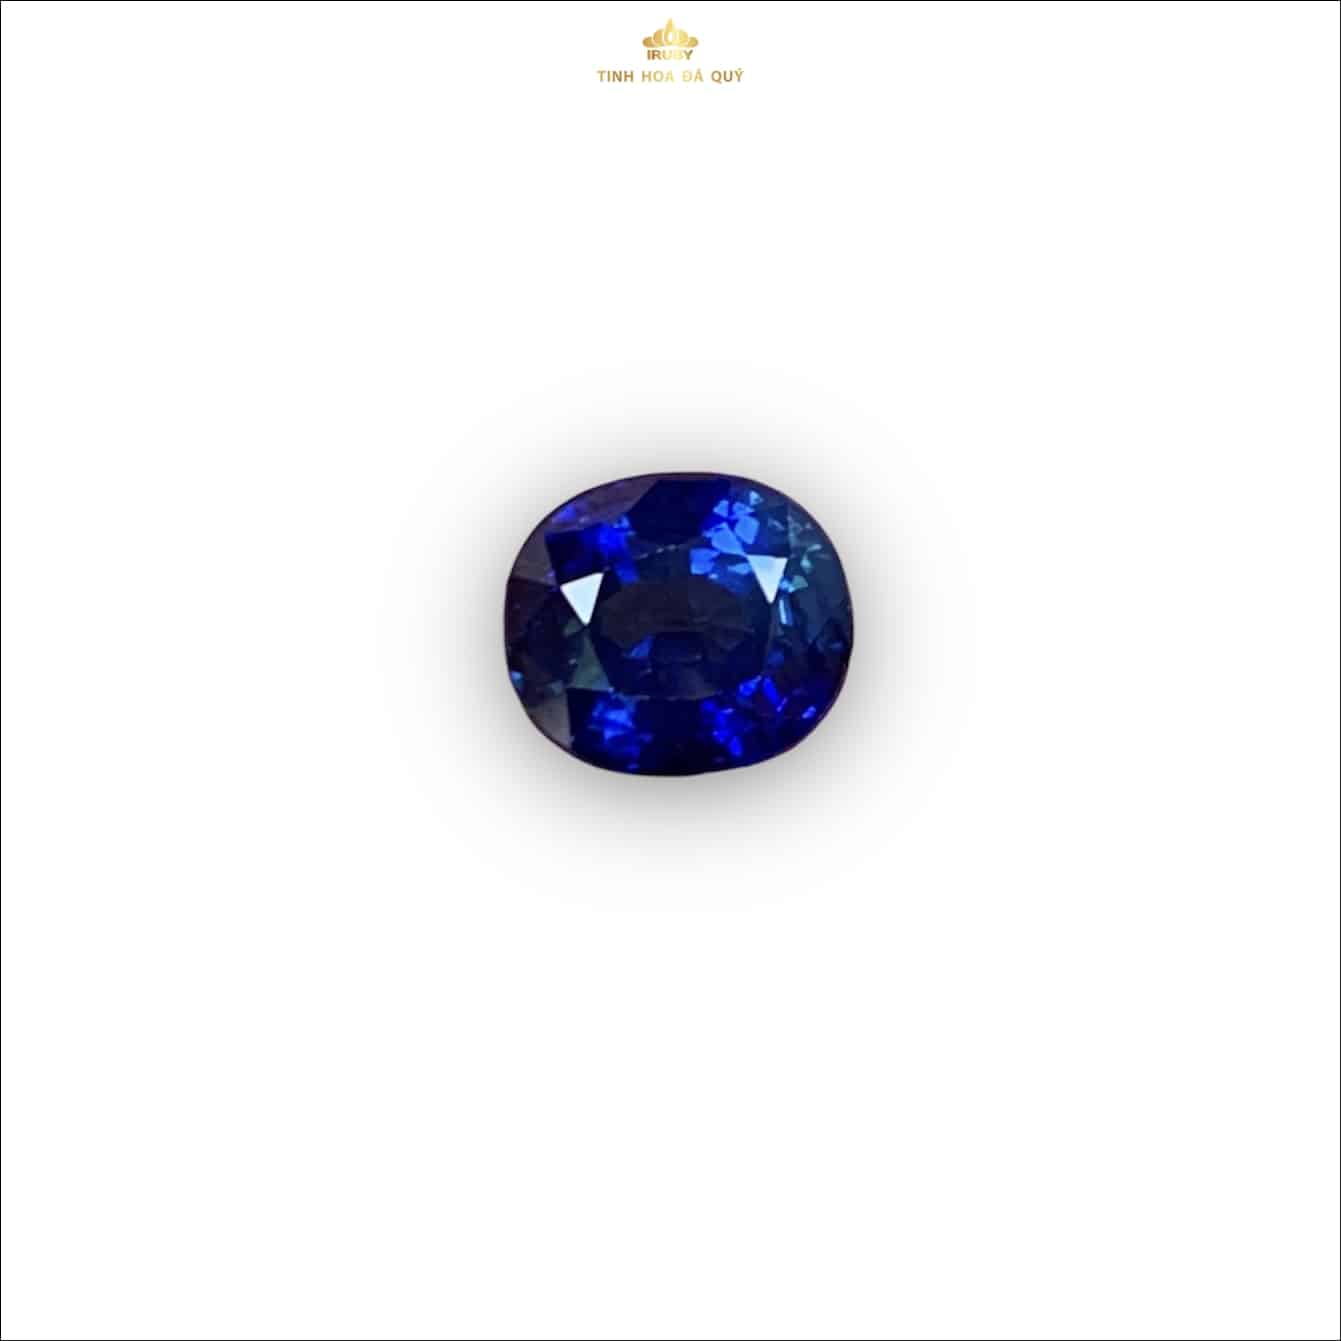 Viên Sapphire xanh lam tự nhiên nguyên bản 2,95ct - IRBS 233295